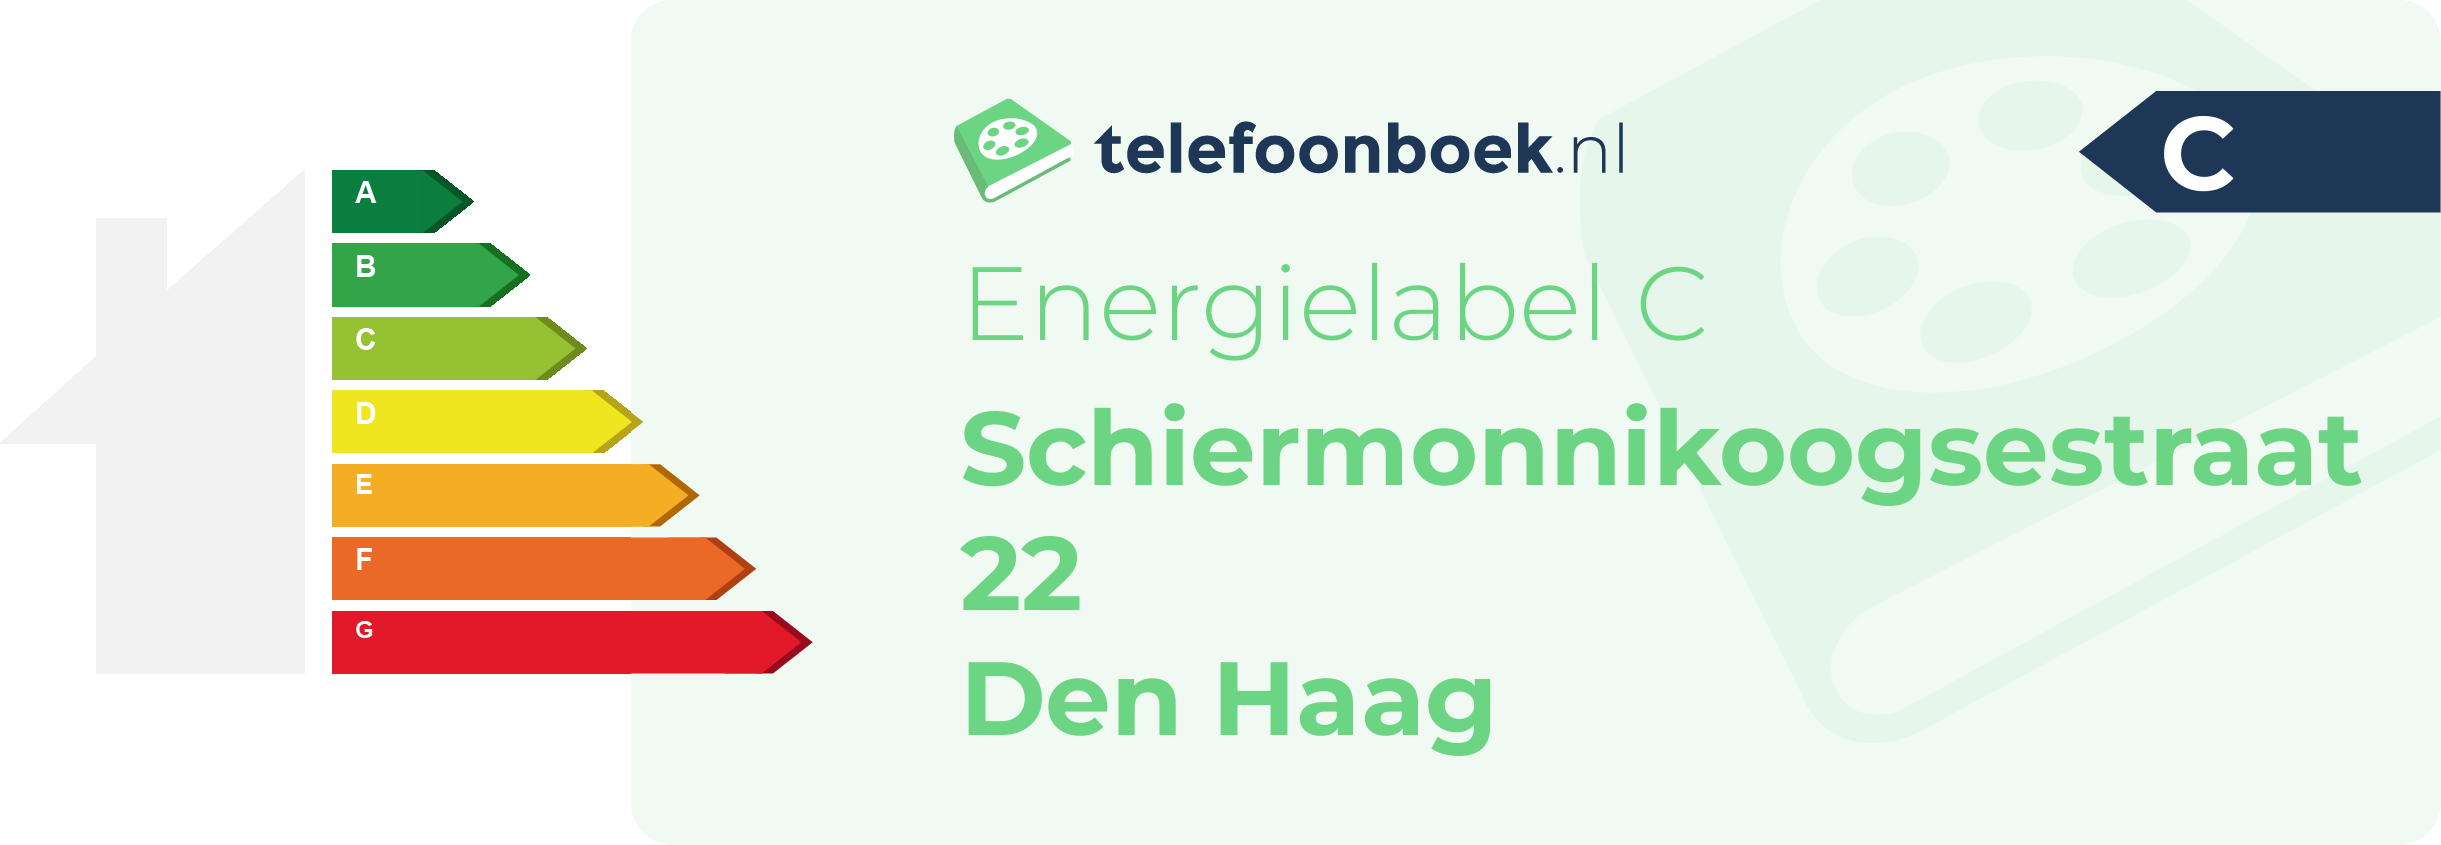 Energielabel Schiermonnikoogsestraat 22 Den Haag